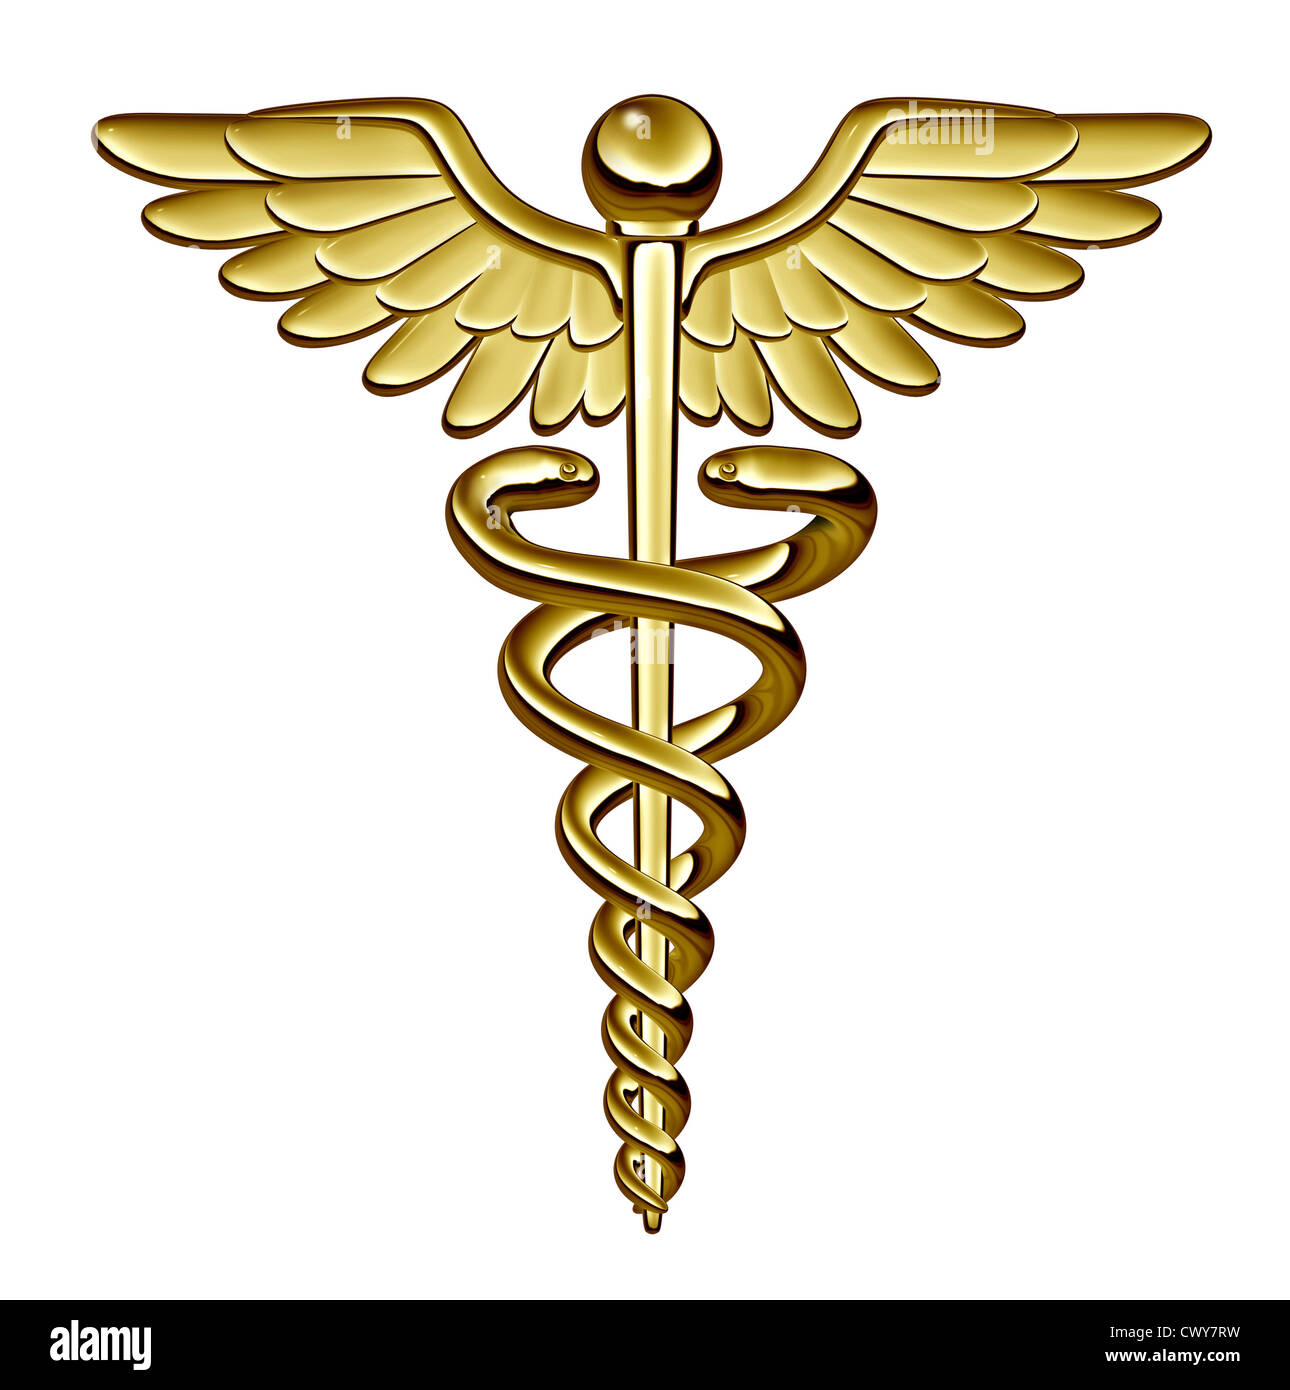 Medical Symbol Snake Meaning